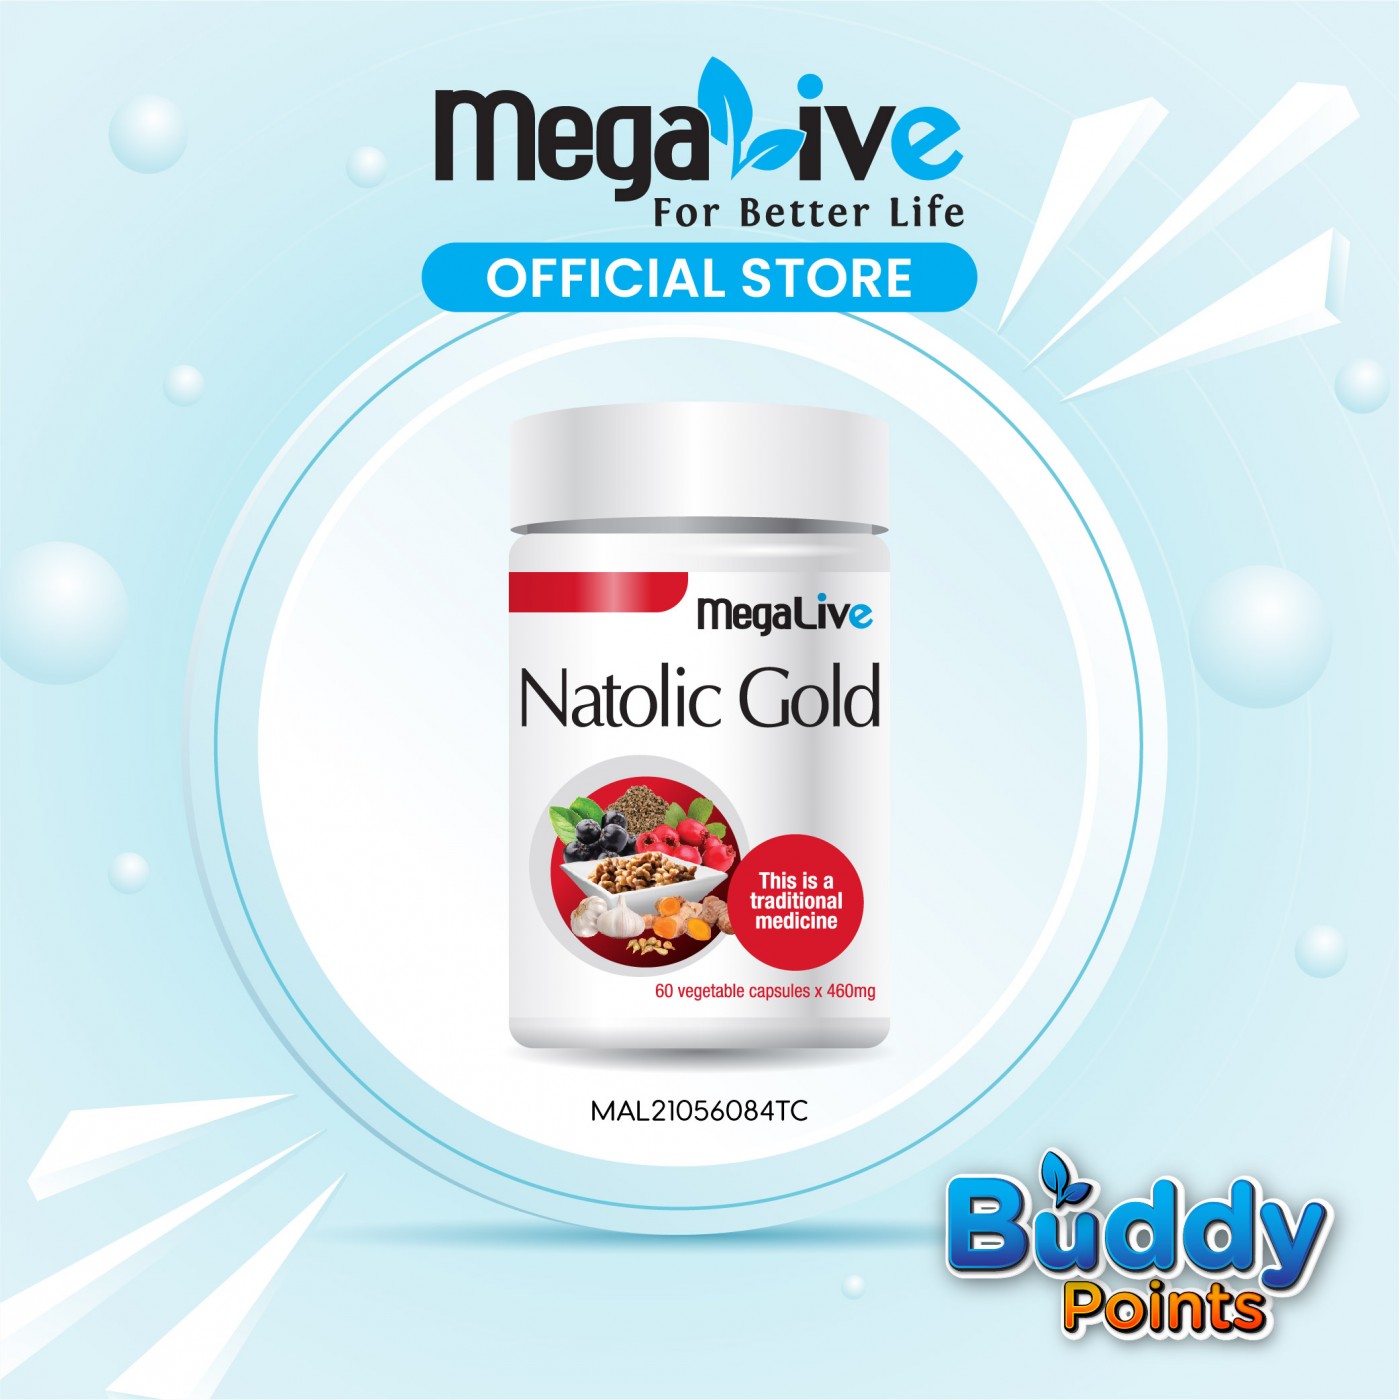 MegaLive Natolic Gold